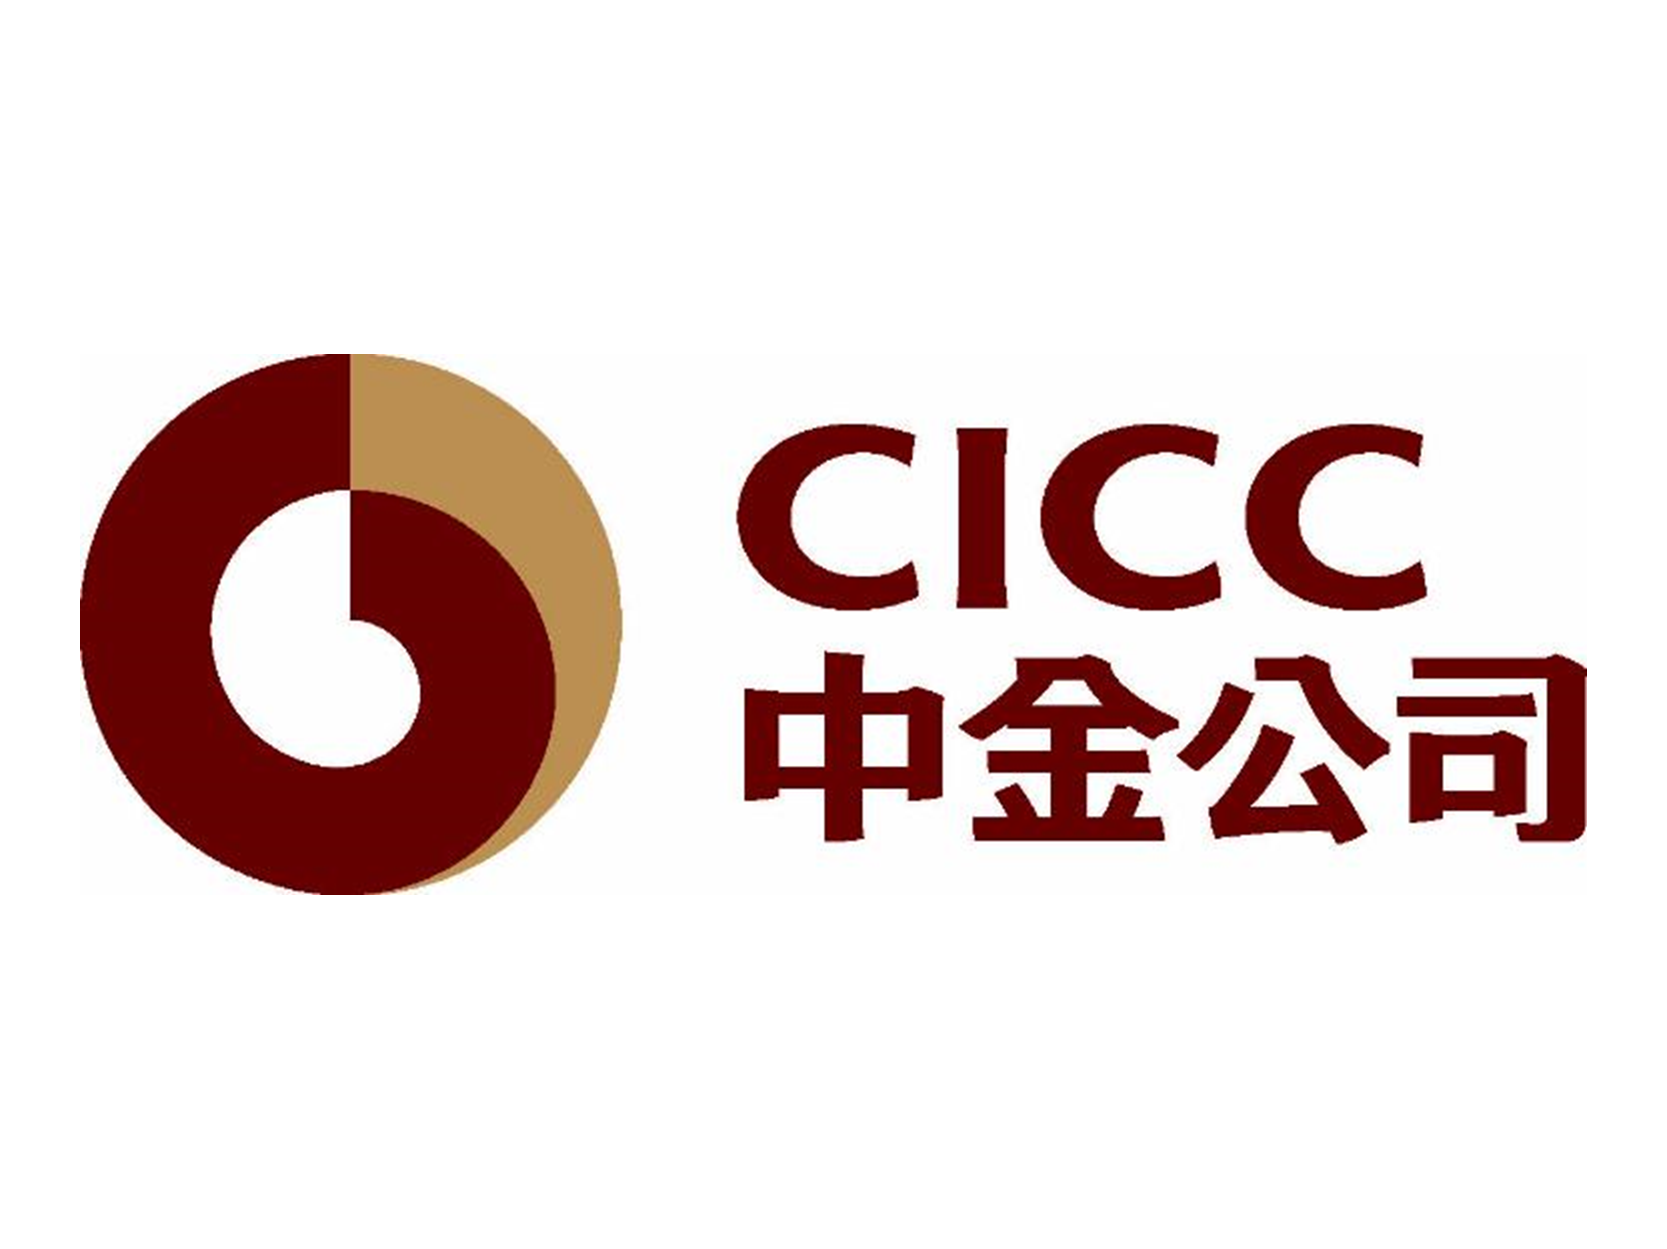 cicc_website.png